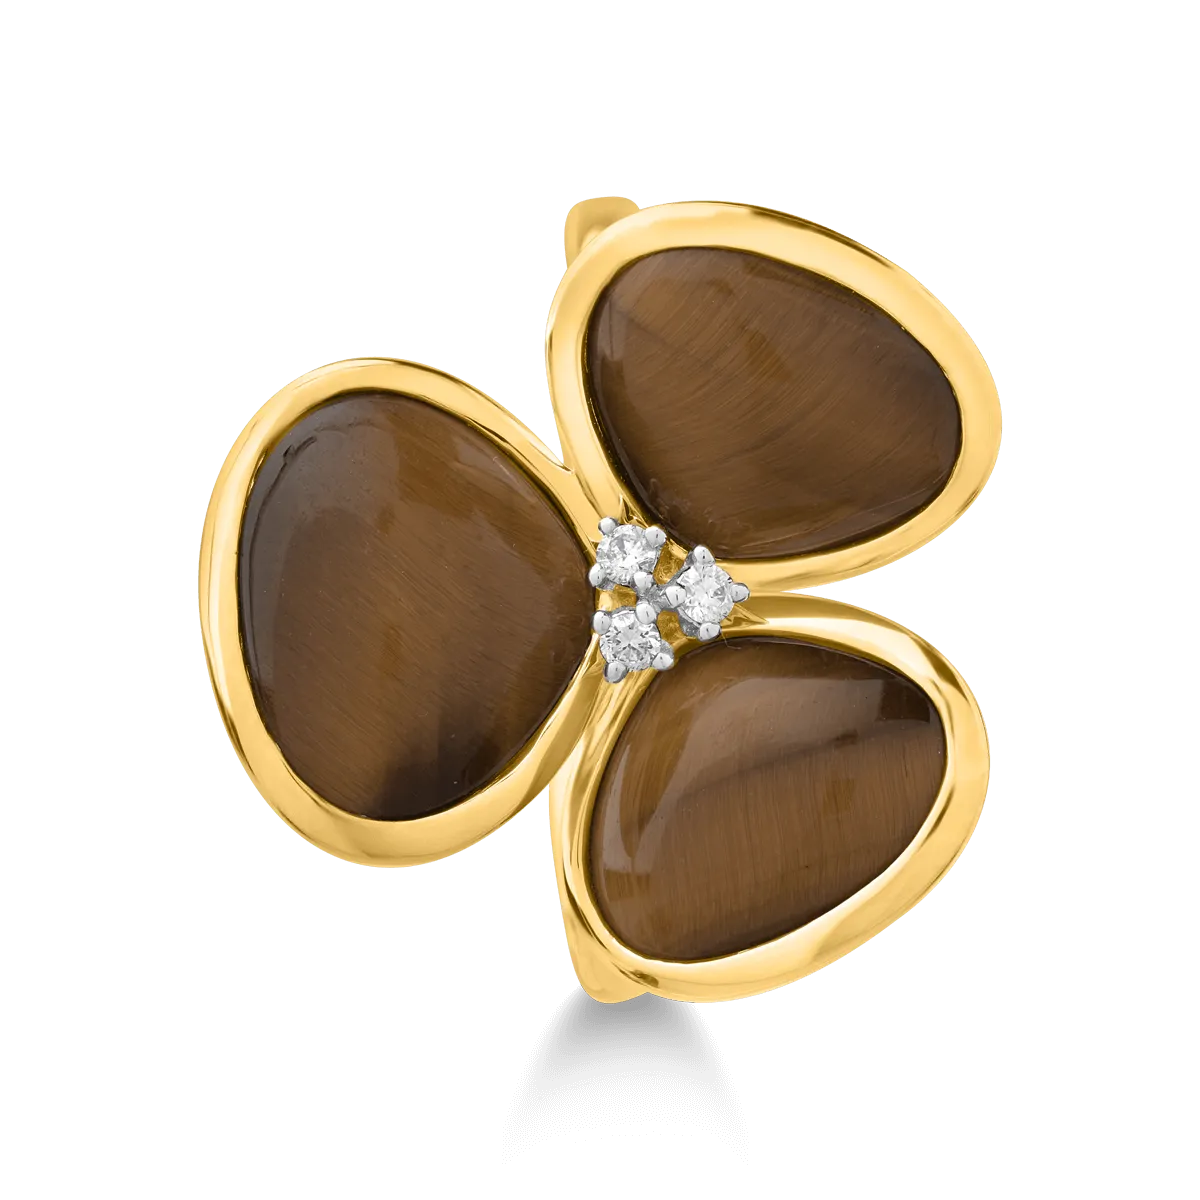 Gyűrű 18K-os sárga aranyból 7,59ct tigrisszemmel (kvarc féle, homályos) és 0,041ct gyémántokkal. Gramm: 4,86